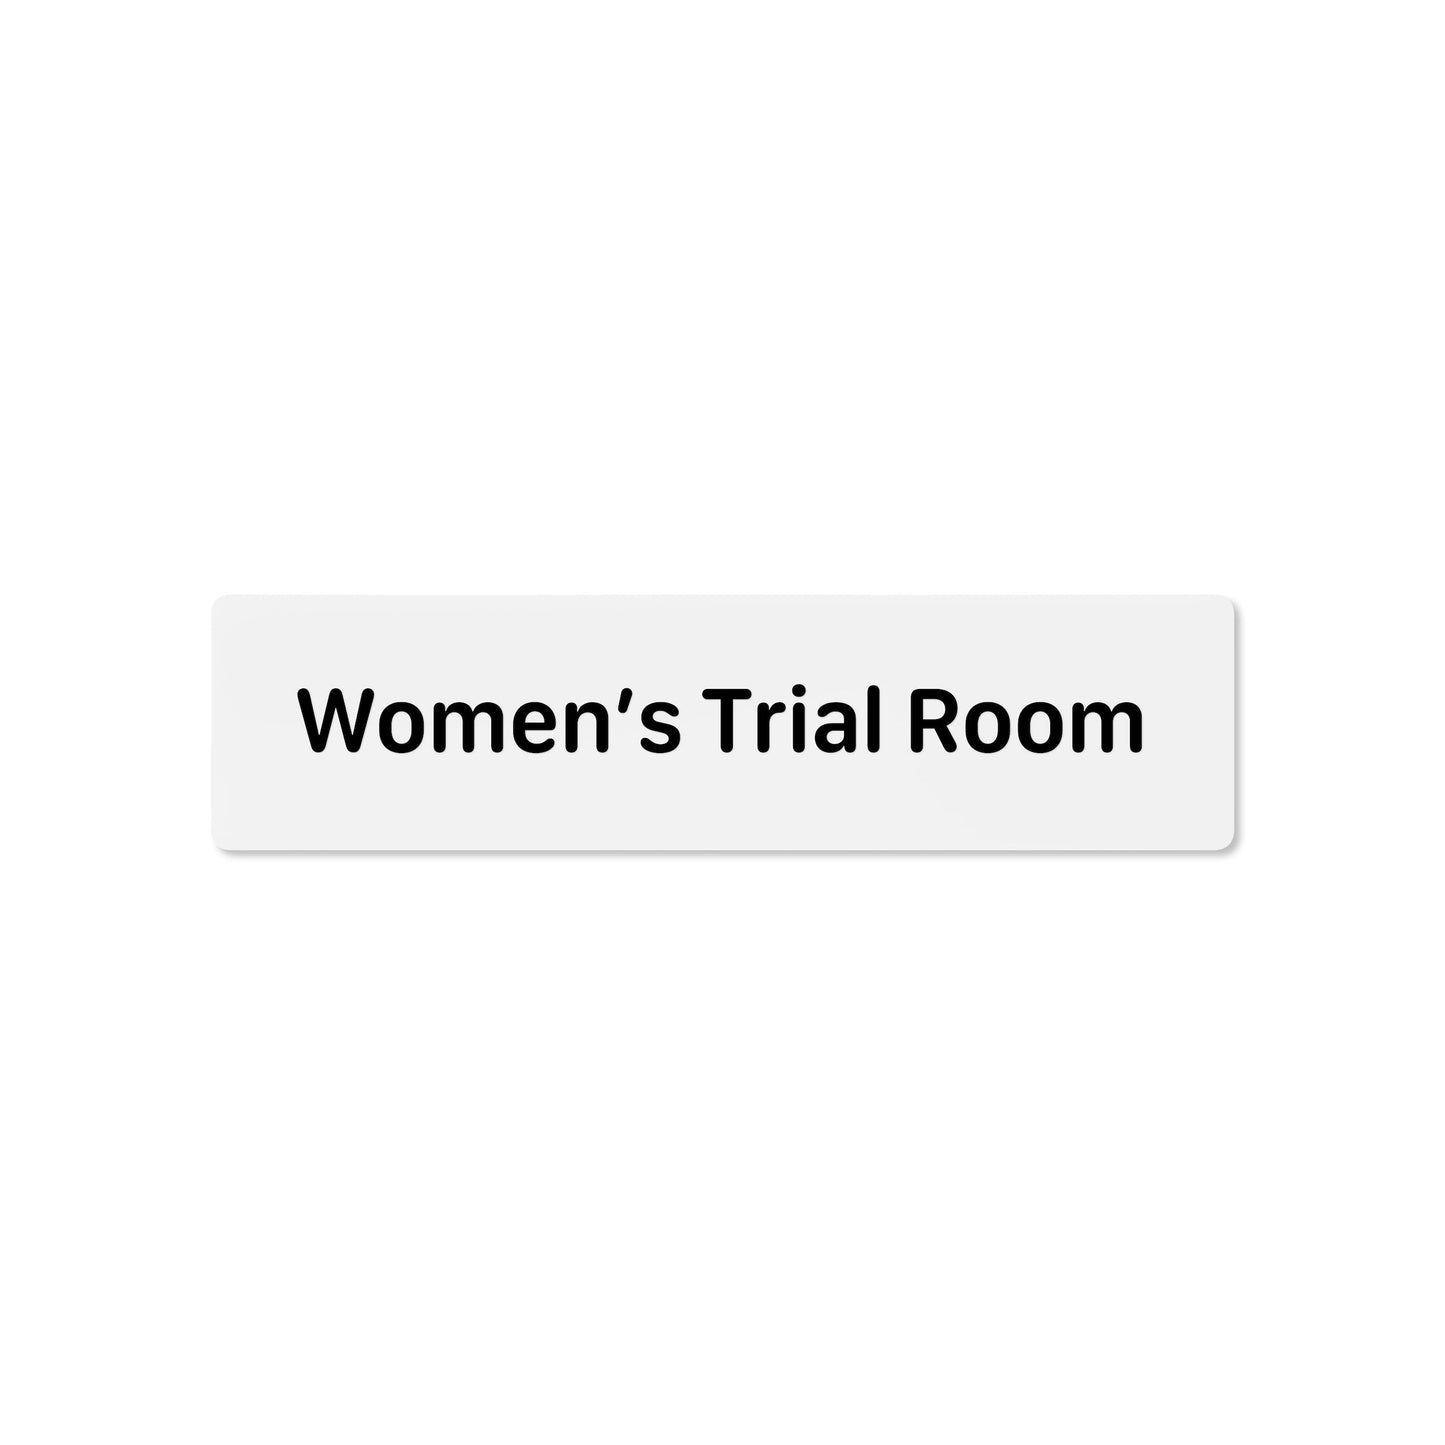 Women’s Trial Room